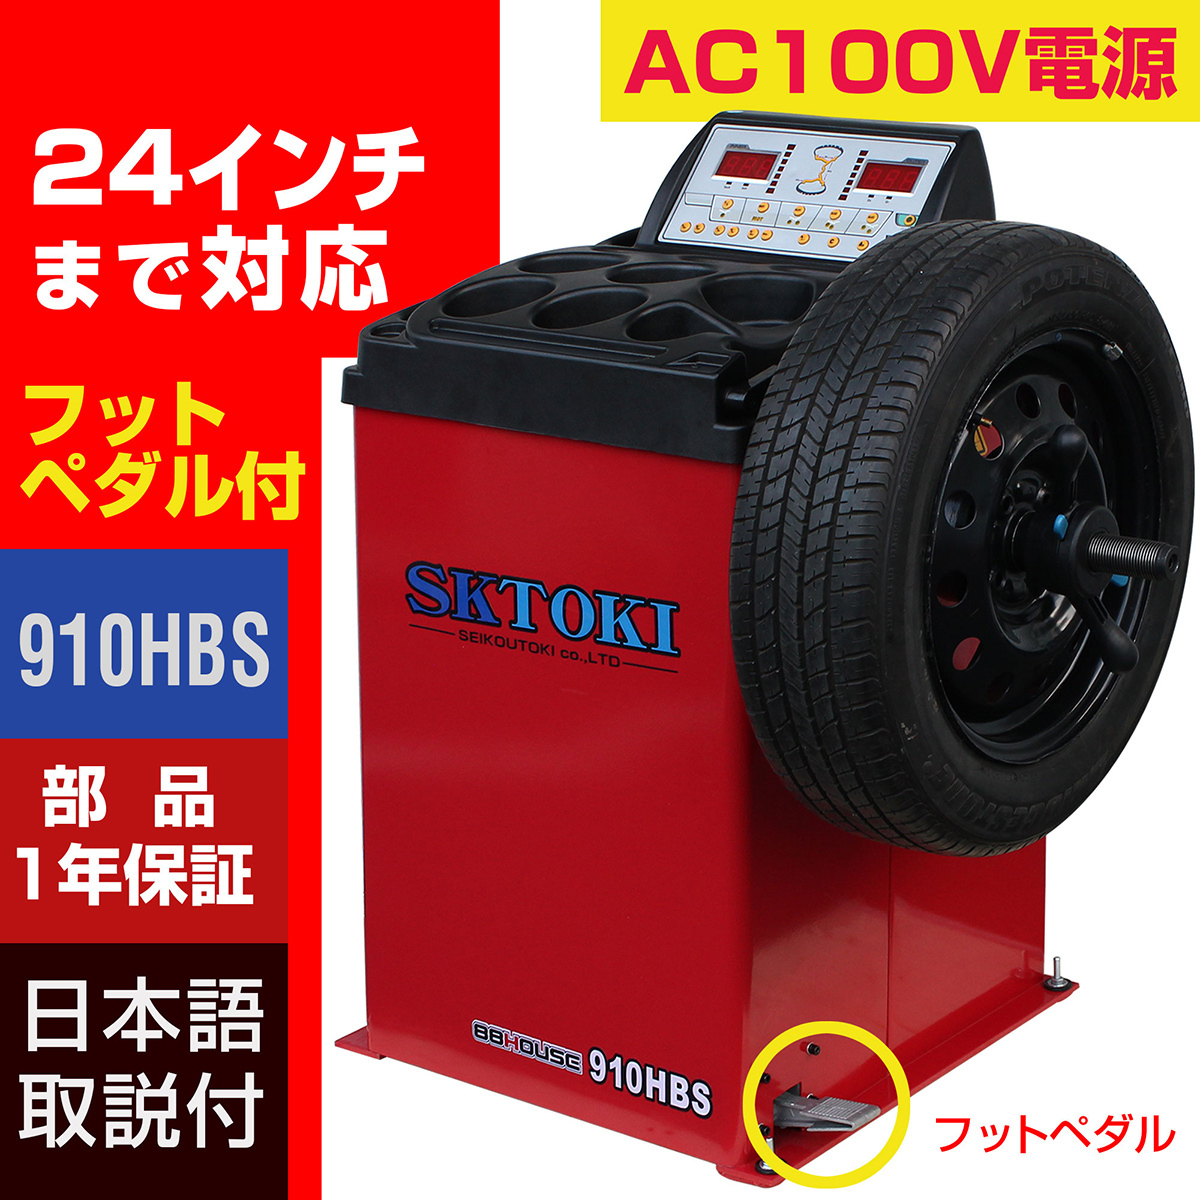 タイヤチェンジャー+バランサーセット SKTOKI 887HC 910HBS AC100V 50/60Hz タイヤ交換 整備機器 ガレージ_画像3